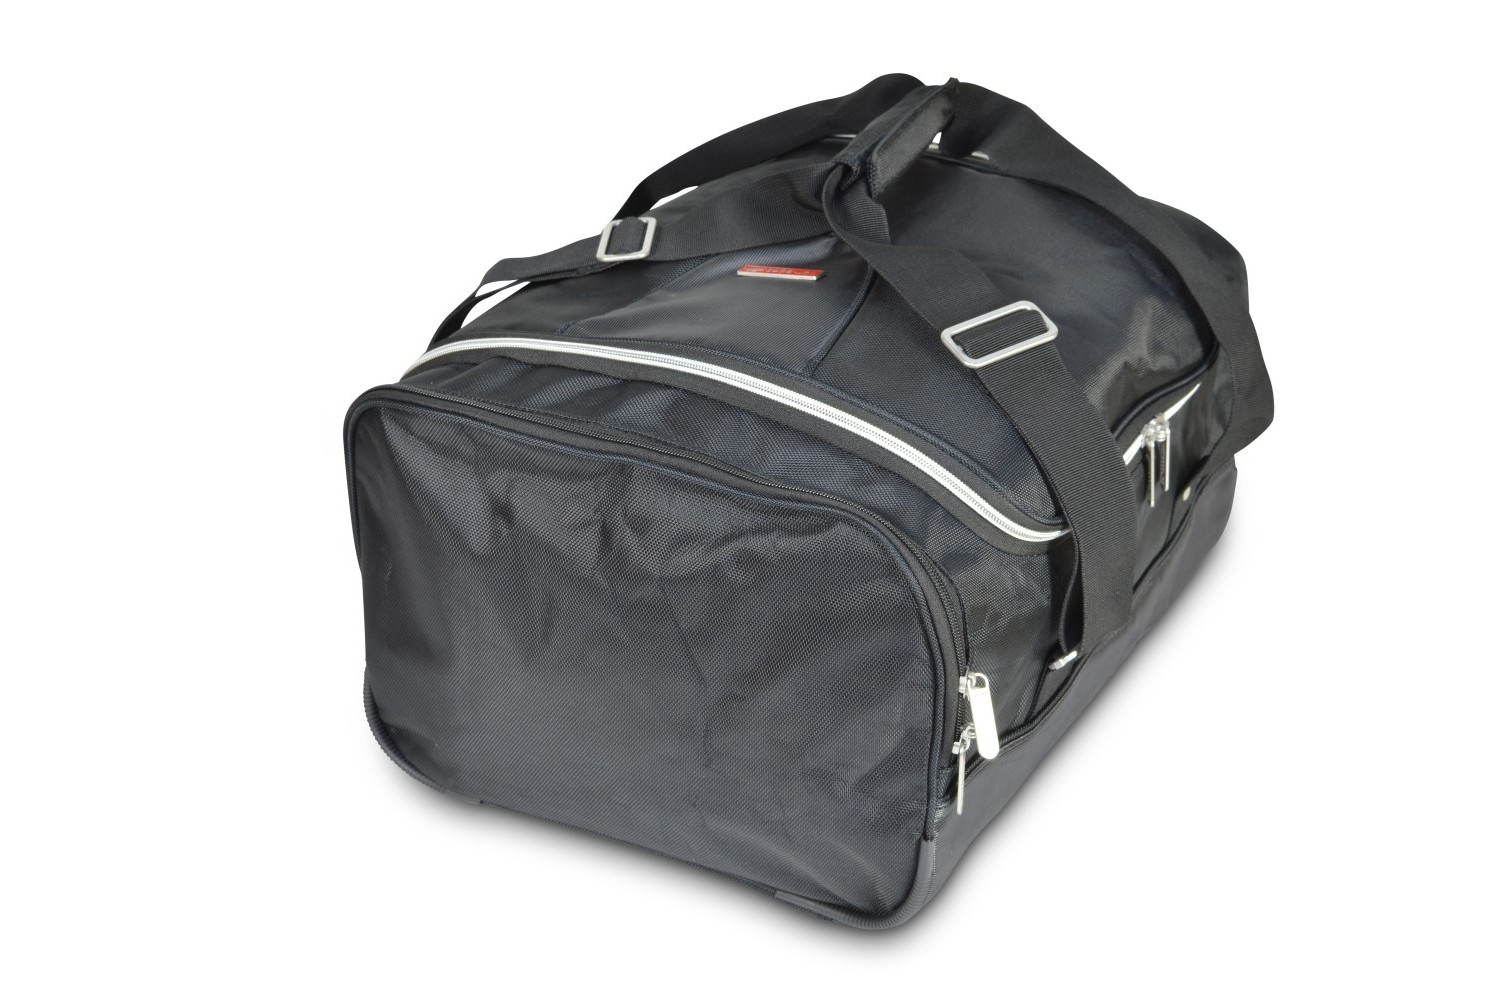 Travel bag - 37x26x44cm (WxHxL)